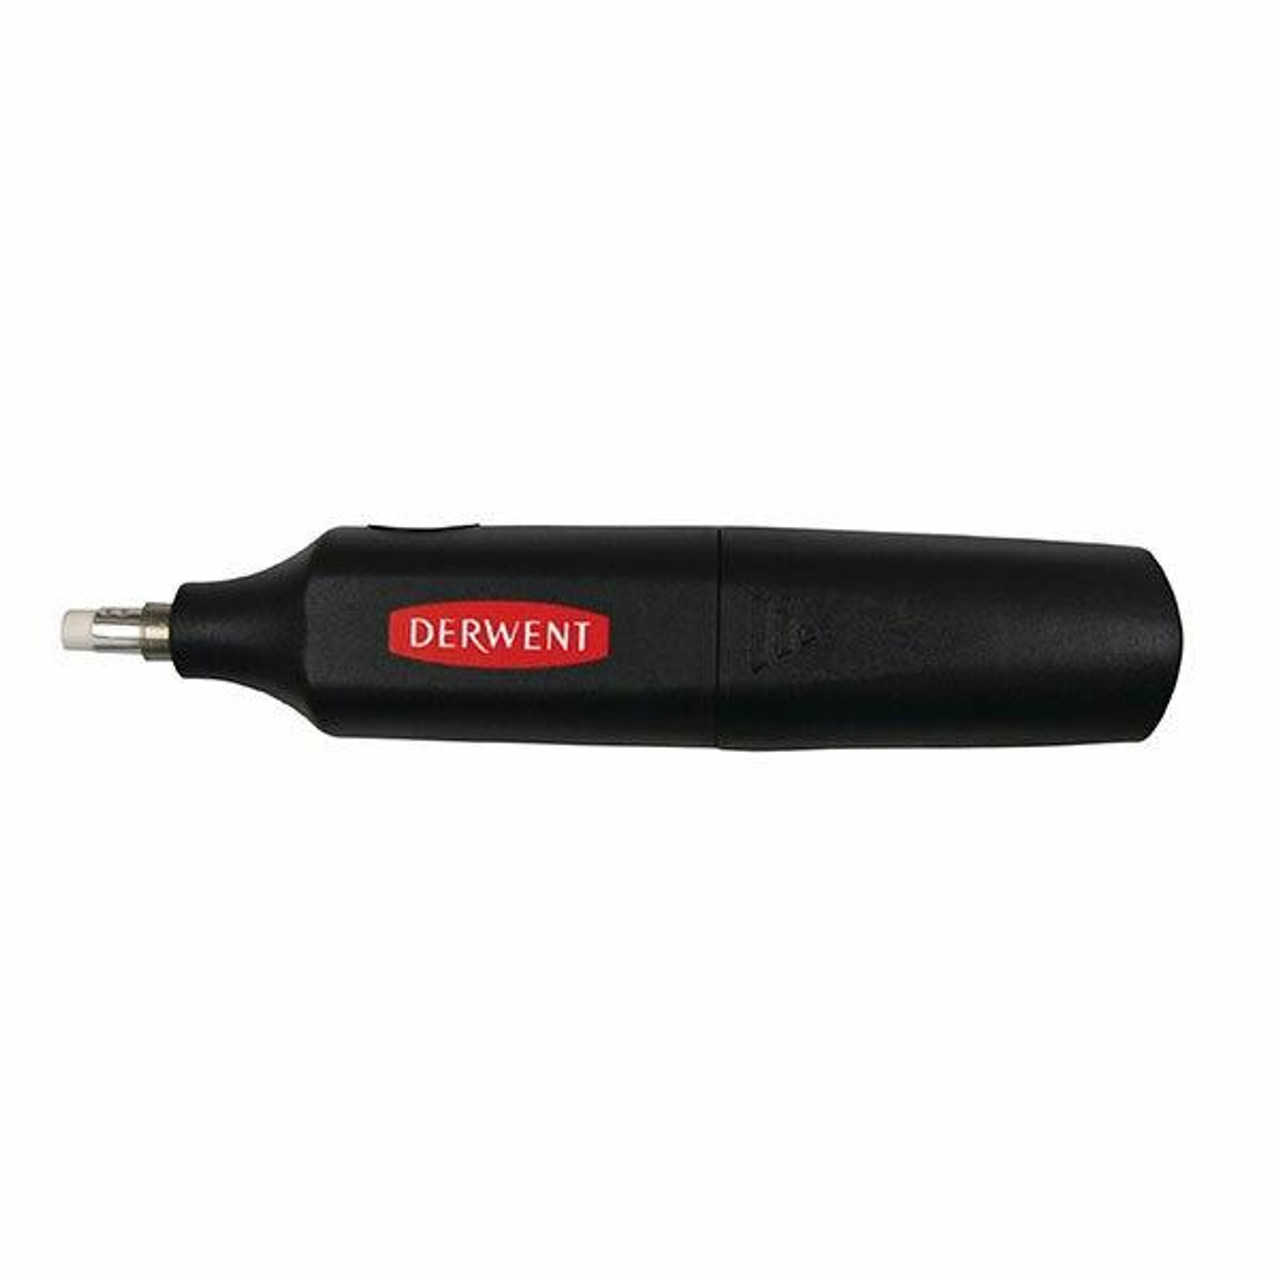 Derwent : USB Rechargeable Eraser